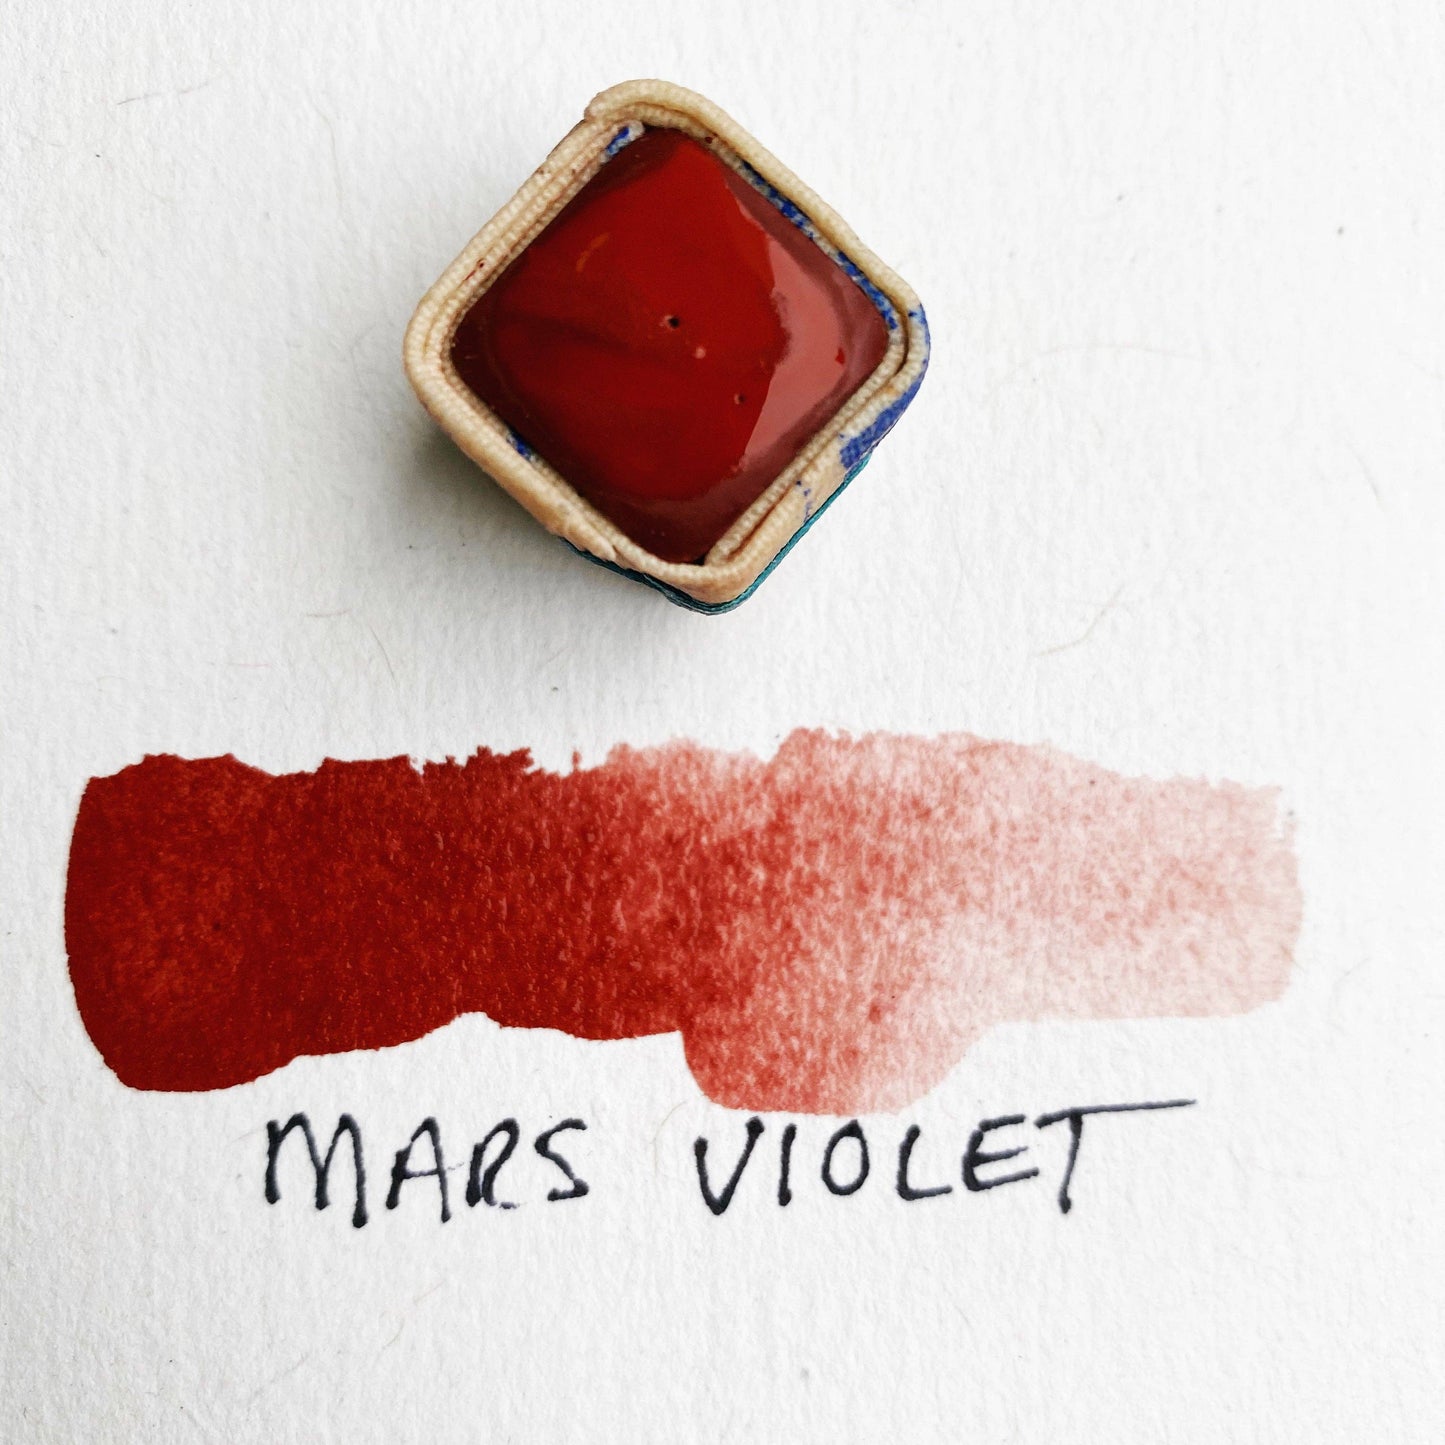 Färgsten – Marsviolett